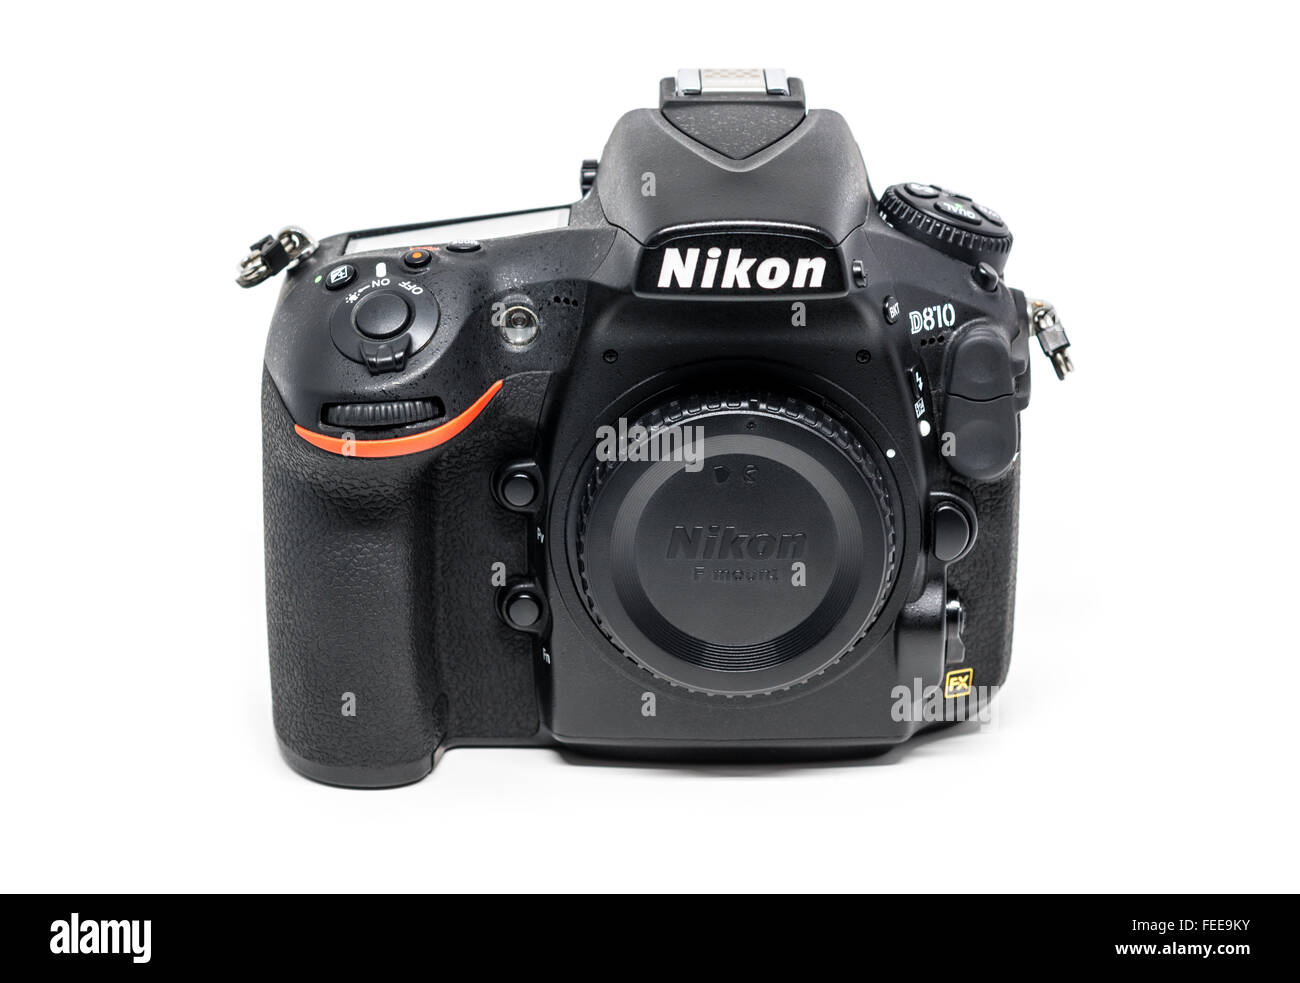 OSTFILDERN, Deutschland - 24. Januar 2016: A Nikon D810 Kameragehäuse ohne  Objektiv, die erste digitale Spiegelreflexkamera Nikons Geschichte t  Stockfotografie - Alamy